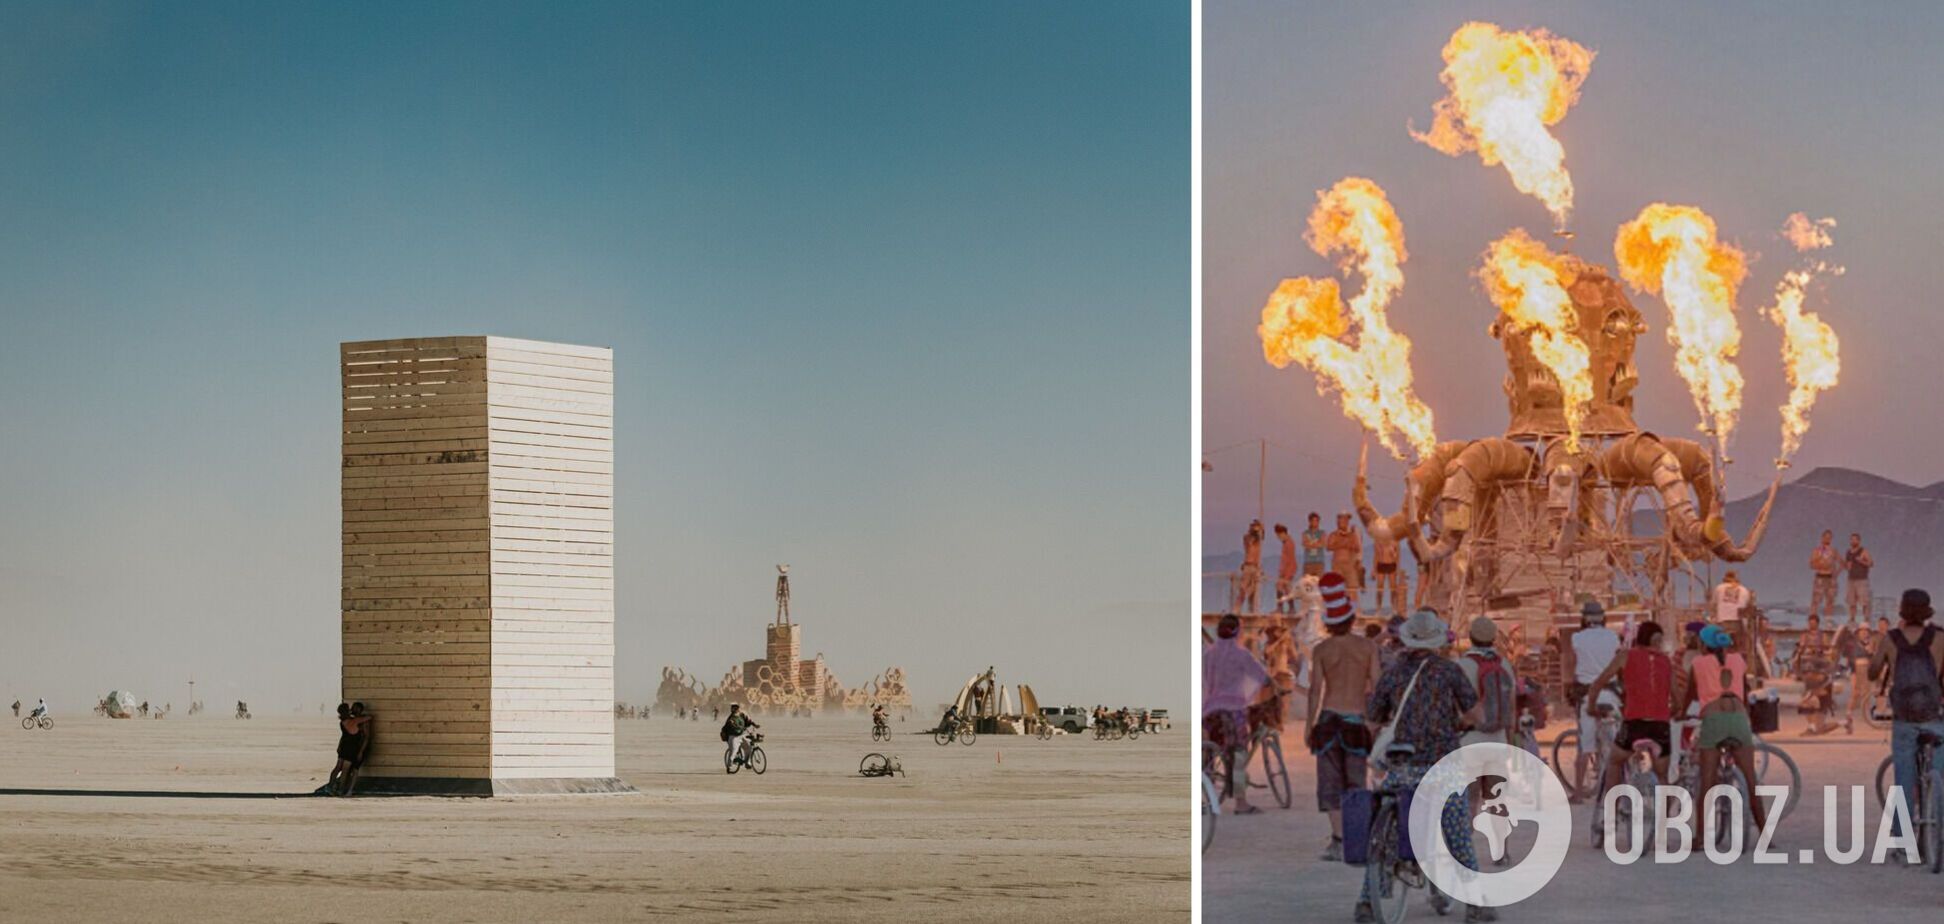 Родится из-за сожжения: Украина на Burning Man представит уникальную скульптуру, о которой будет говорить весь мир